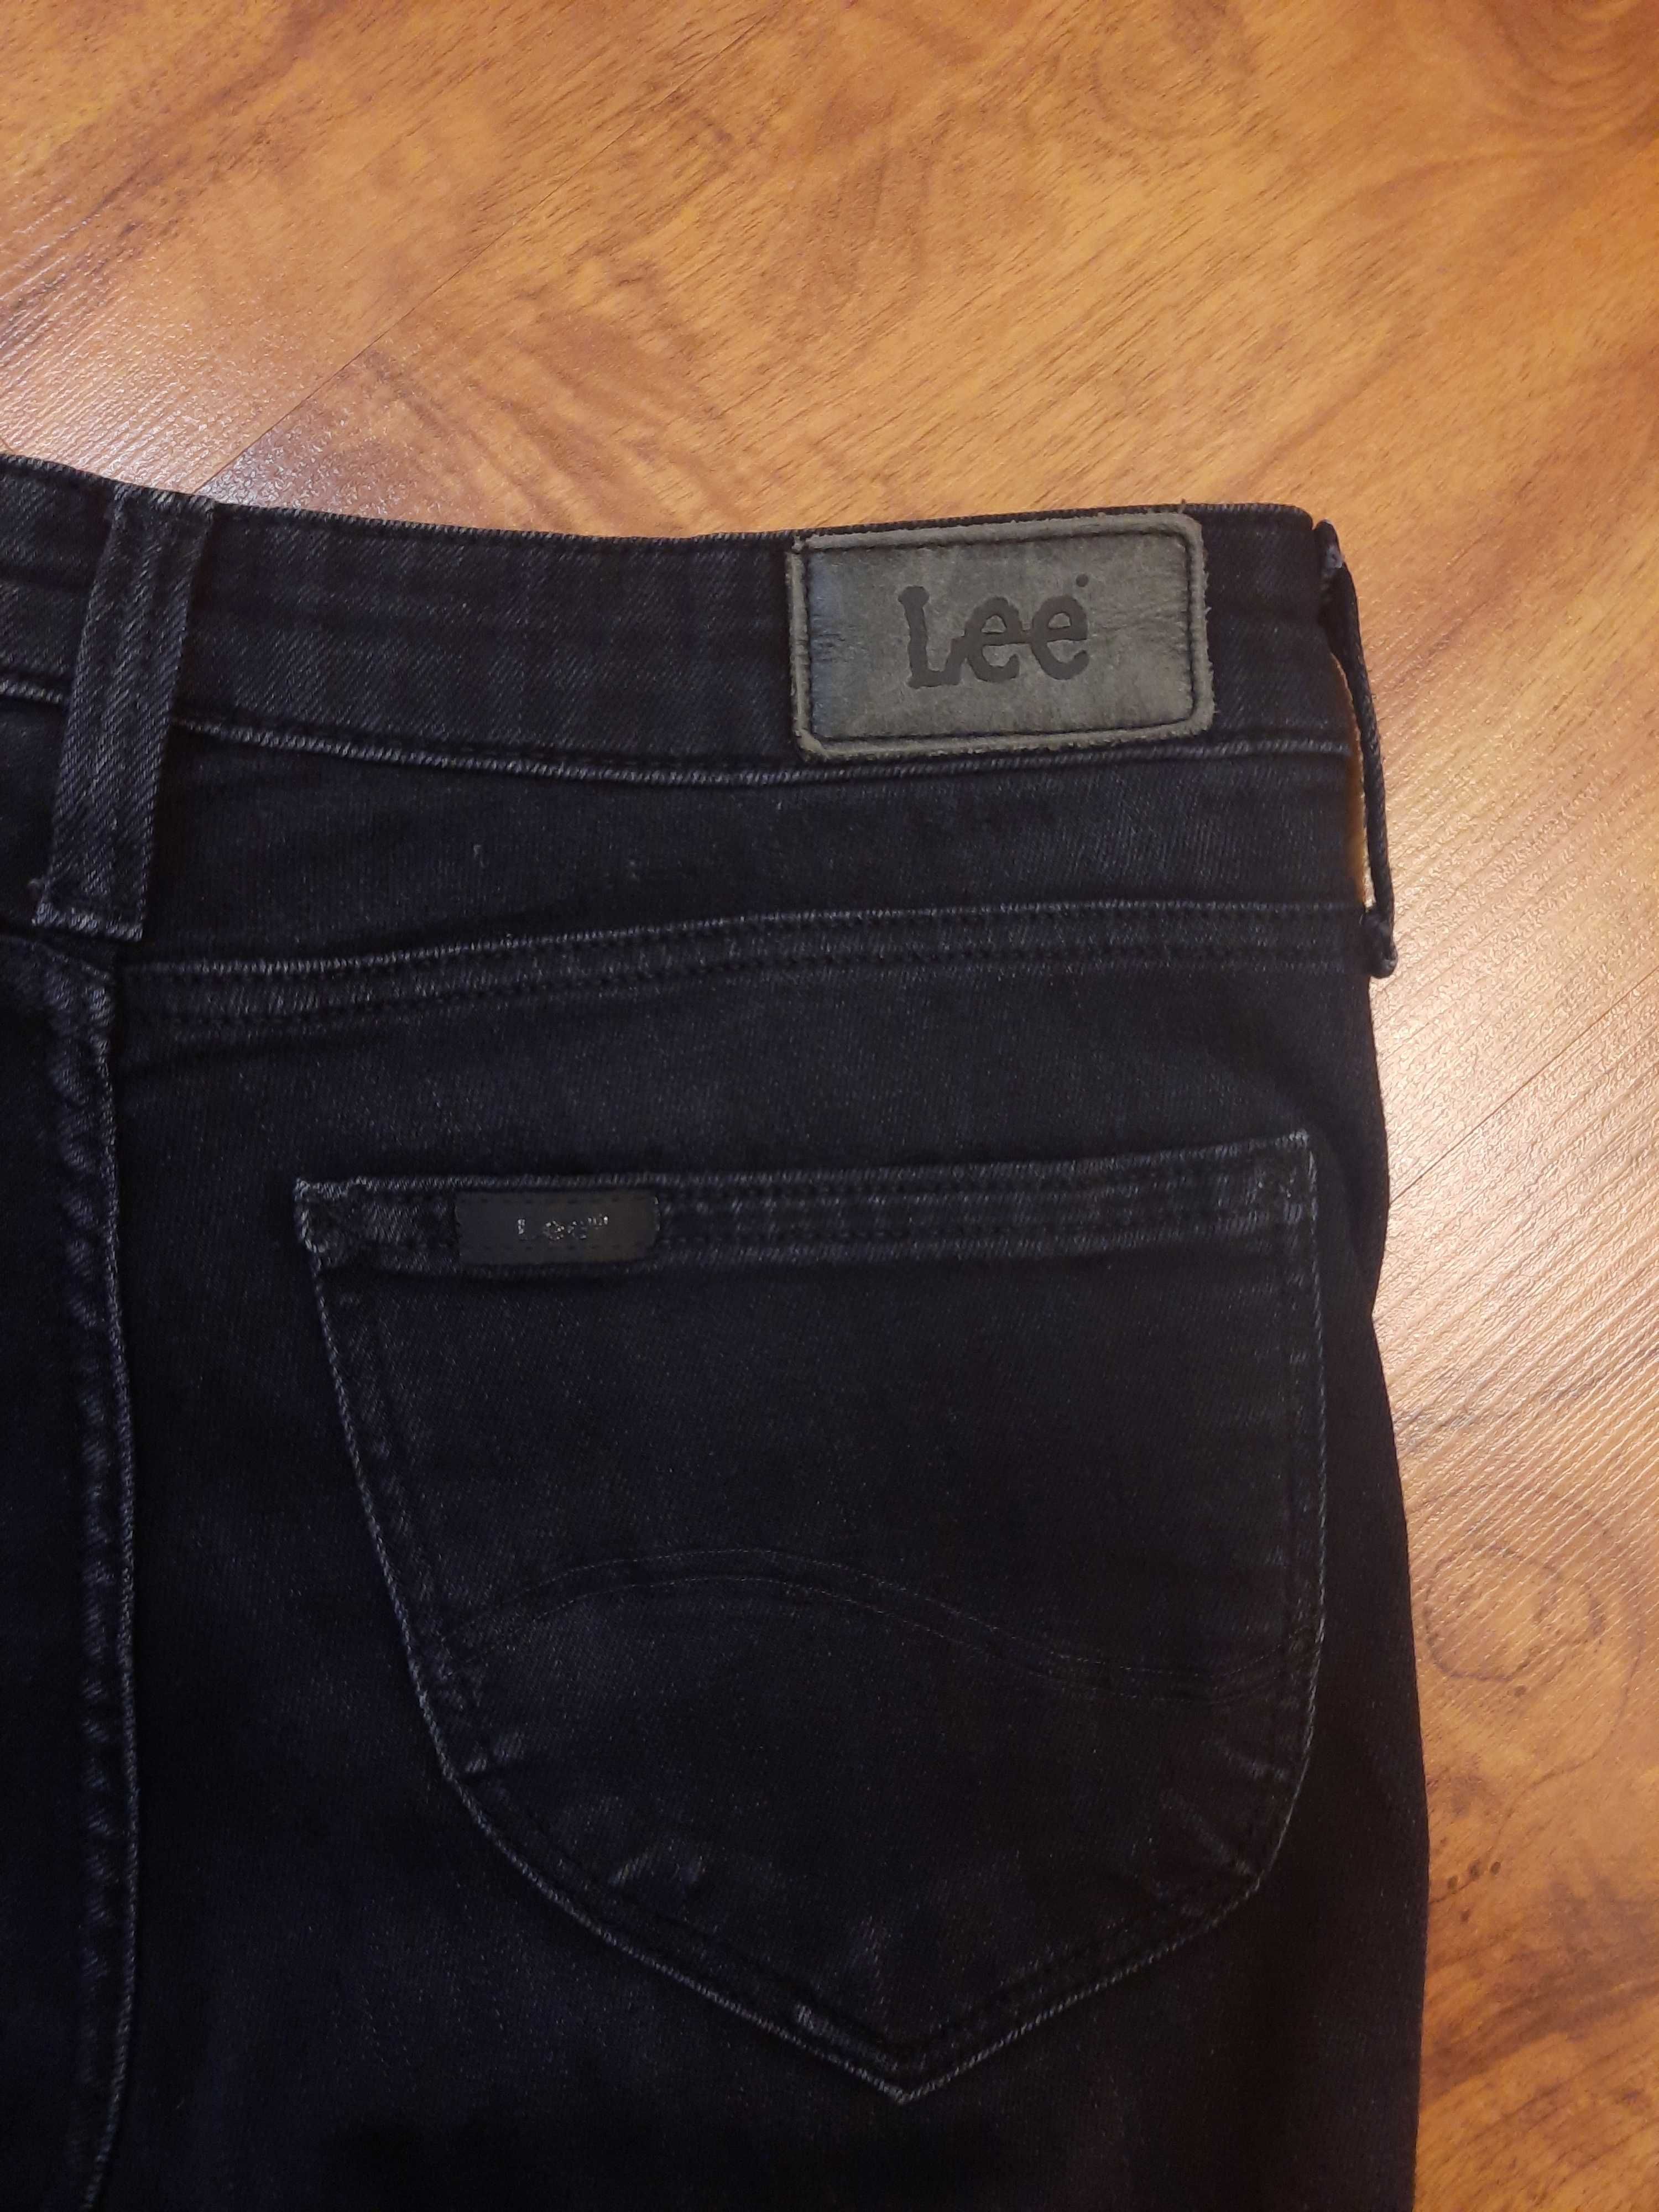 Spodnie jeansowe czarne jeansy Scarlett Lee rozmiar W28 L31 XS S